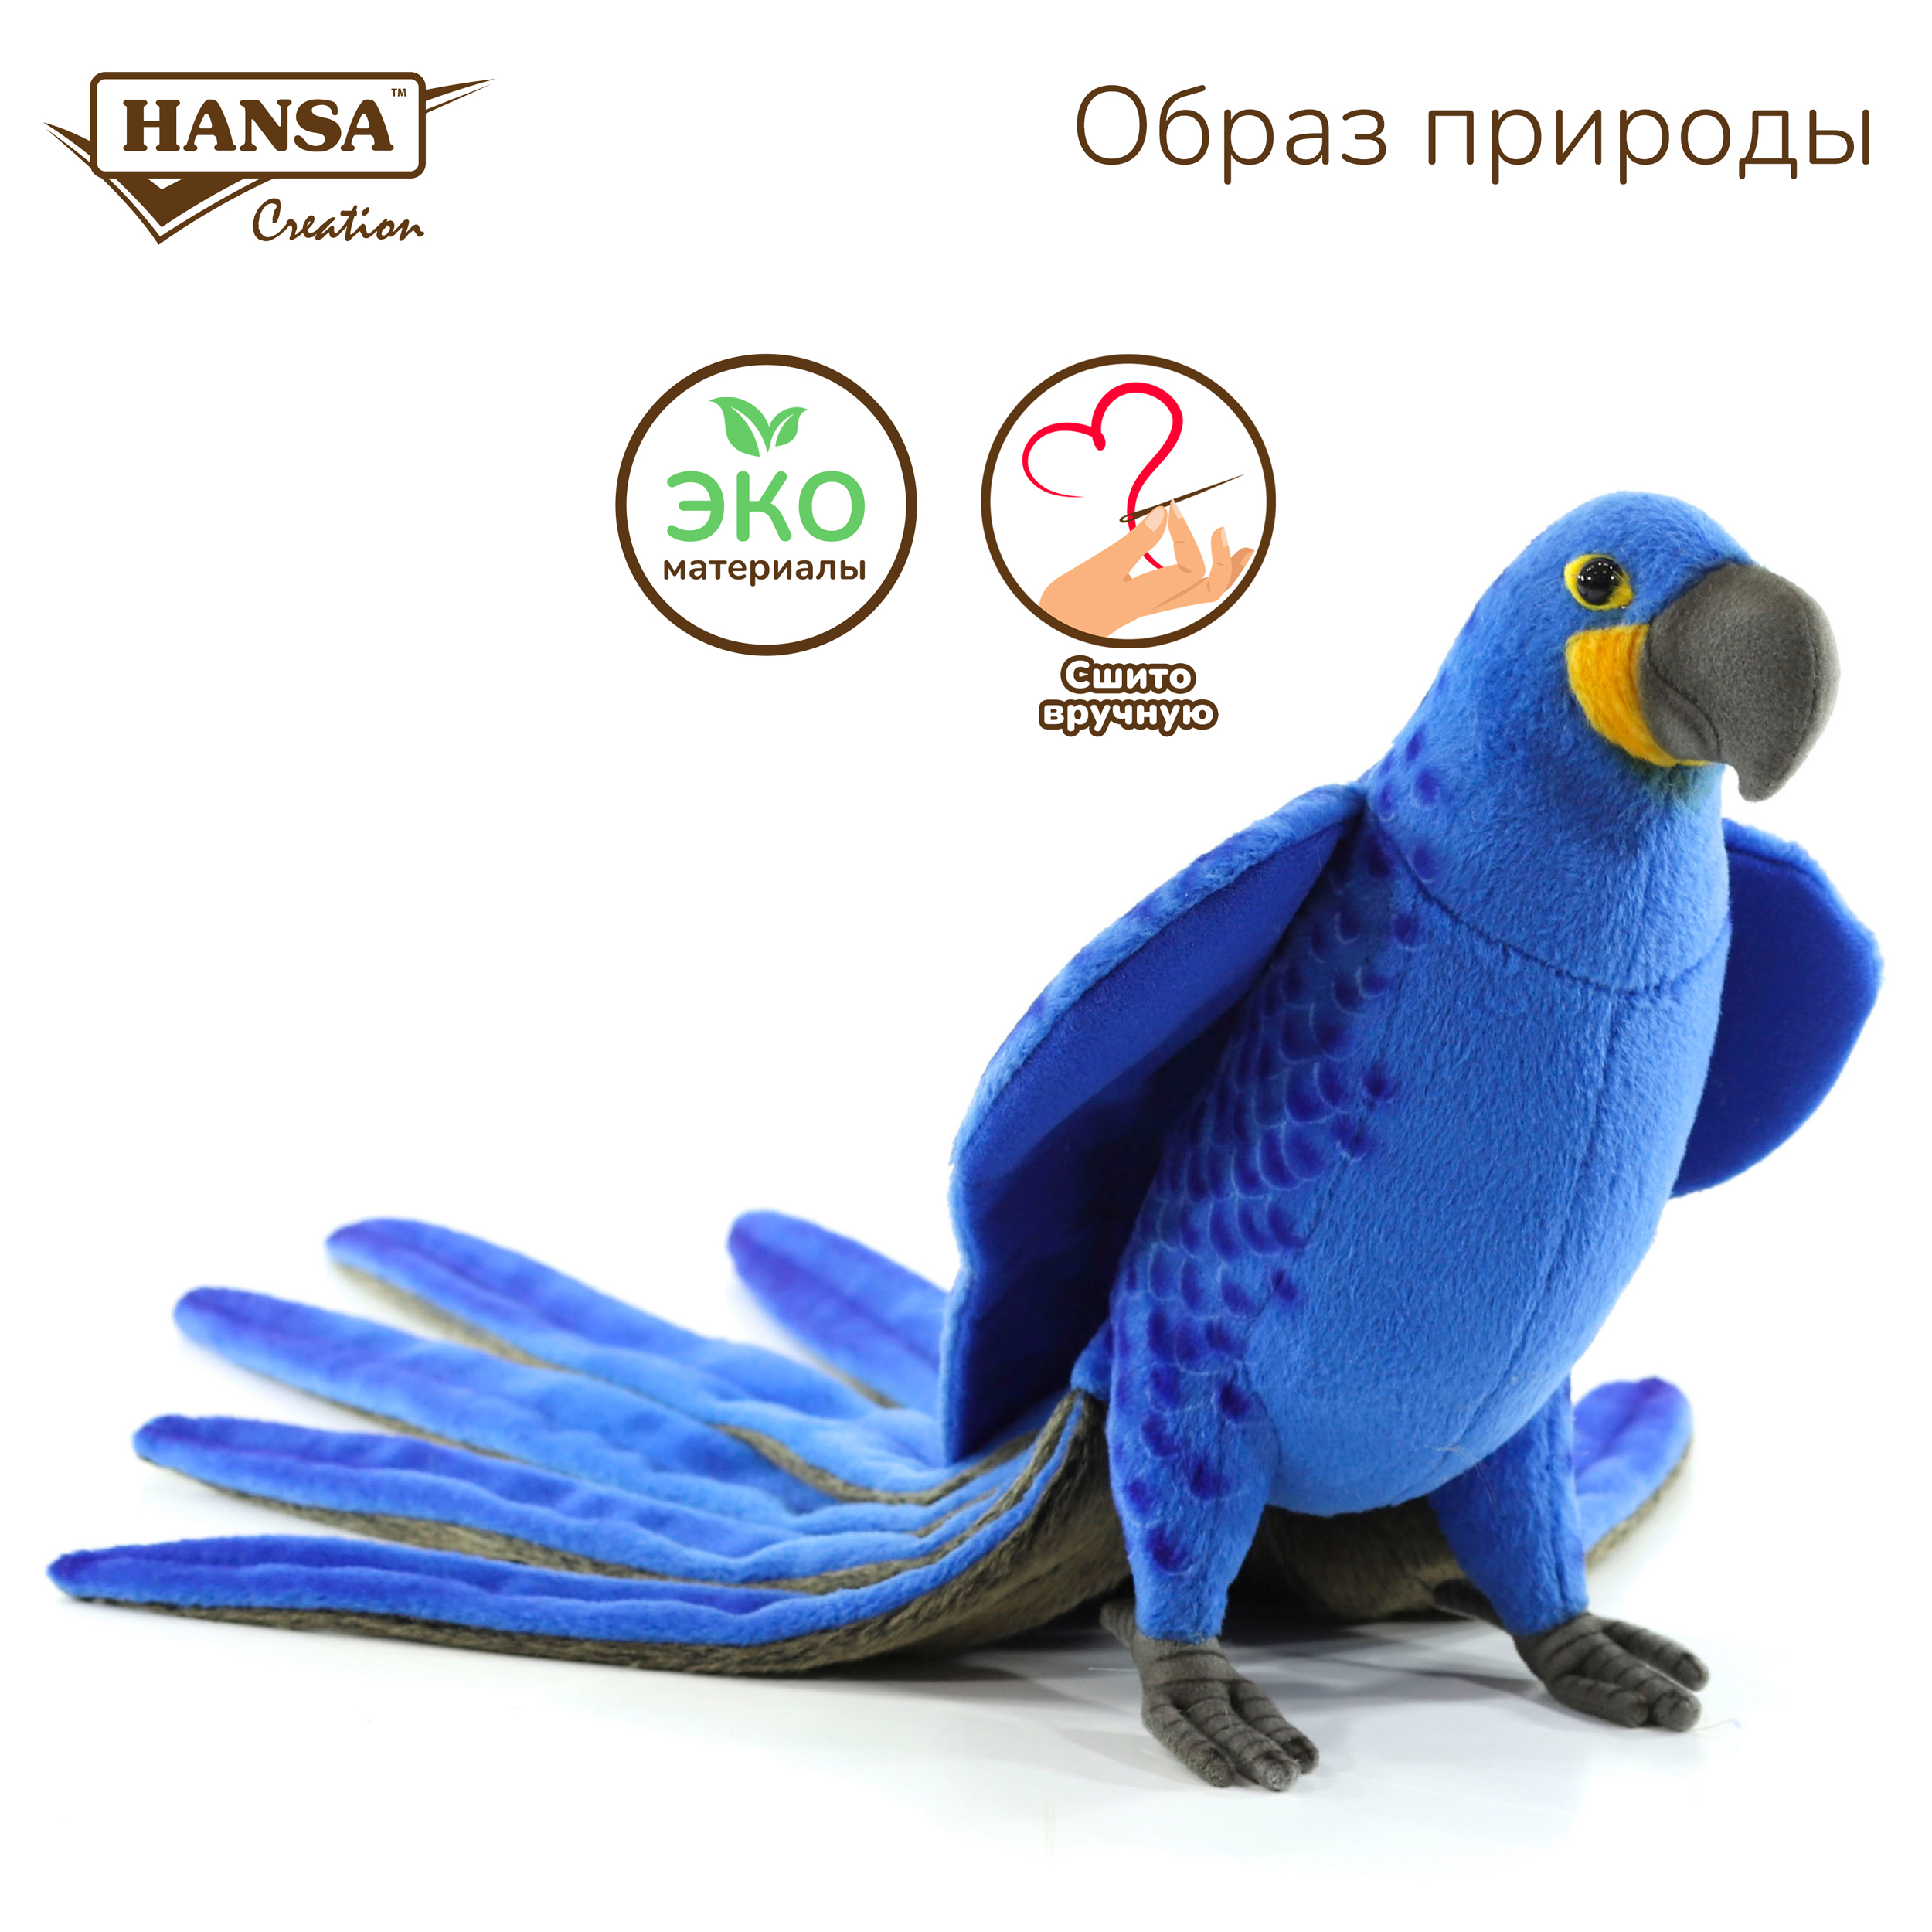 Реалистичная мягкая игрушка Hansa Creation попугай Гиацинтовый ара, 50 см реалистичная мягкая игрушка hansa creation попугай розелла 36 см